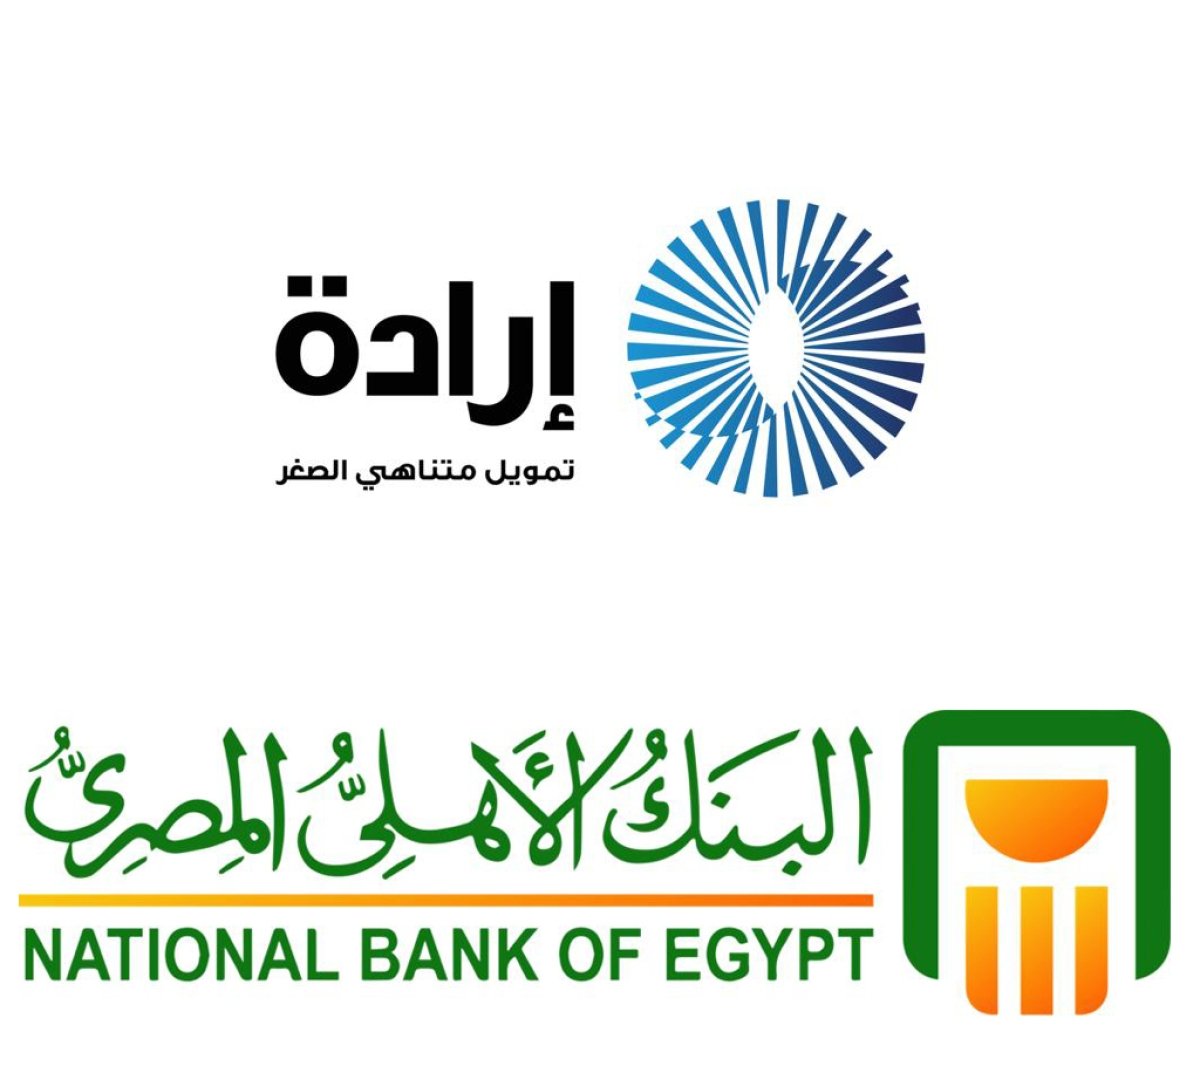 شركة إرادة توقع اتفاقية تمويل مع البنك الأهلي المصري بقيمة 100 مليون جنيه